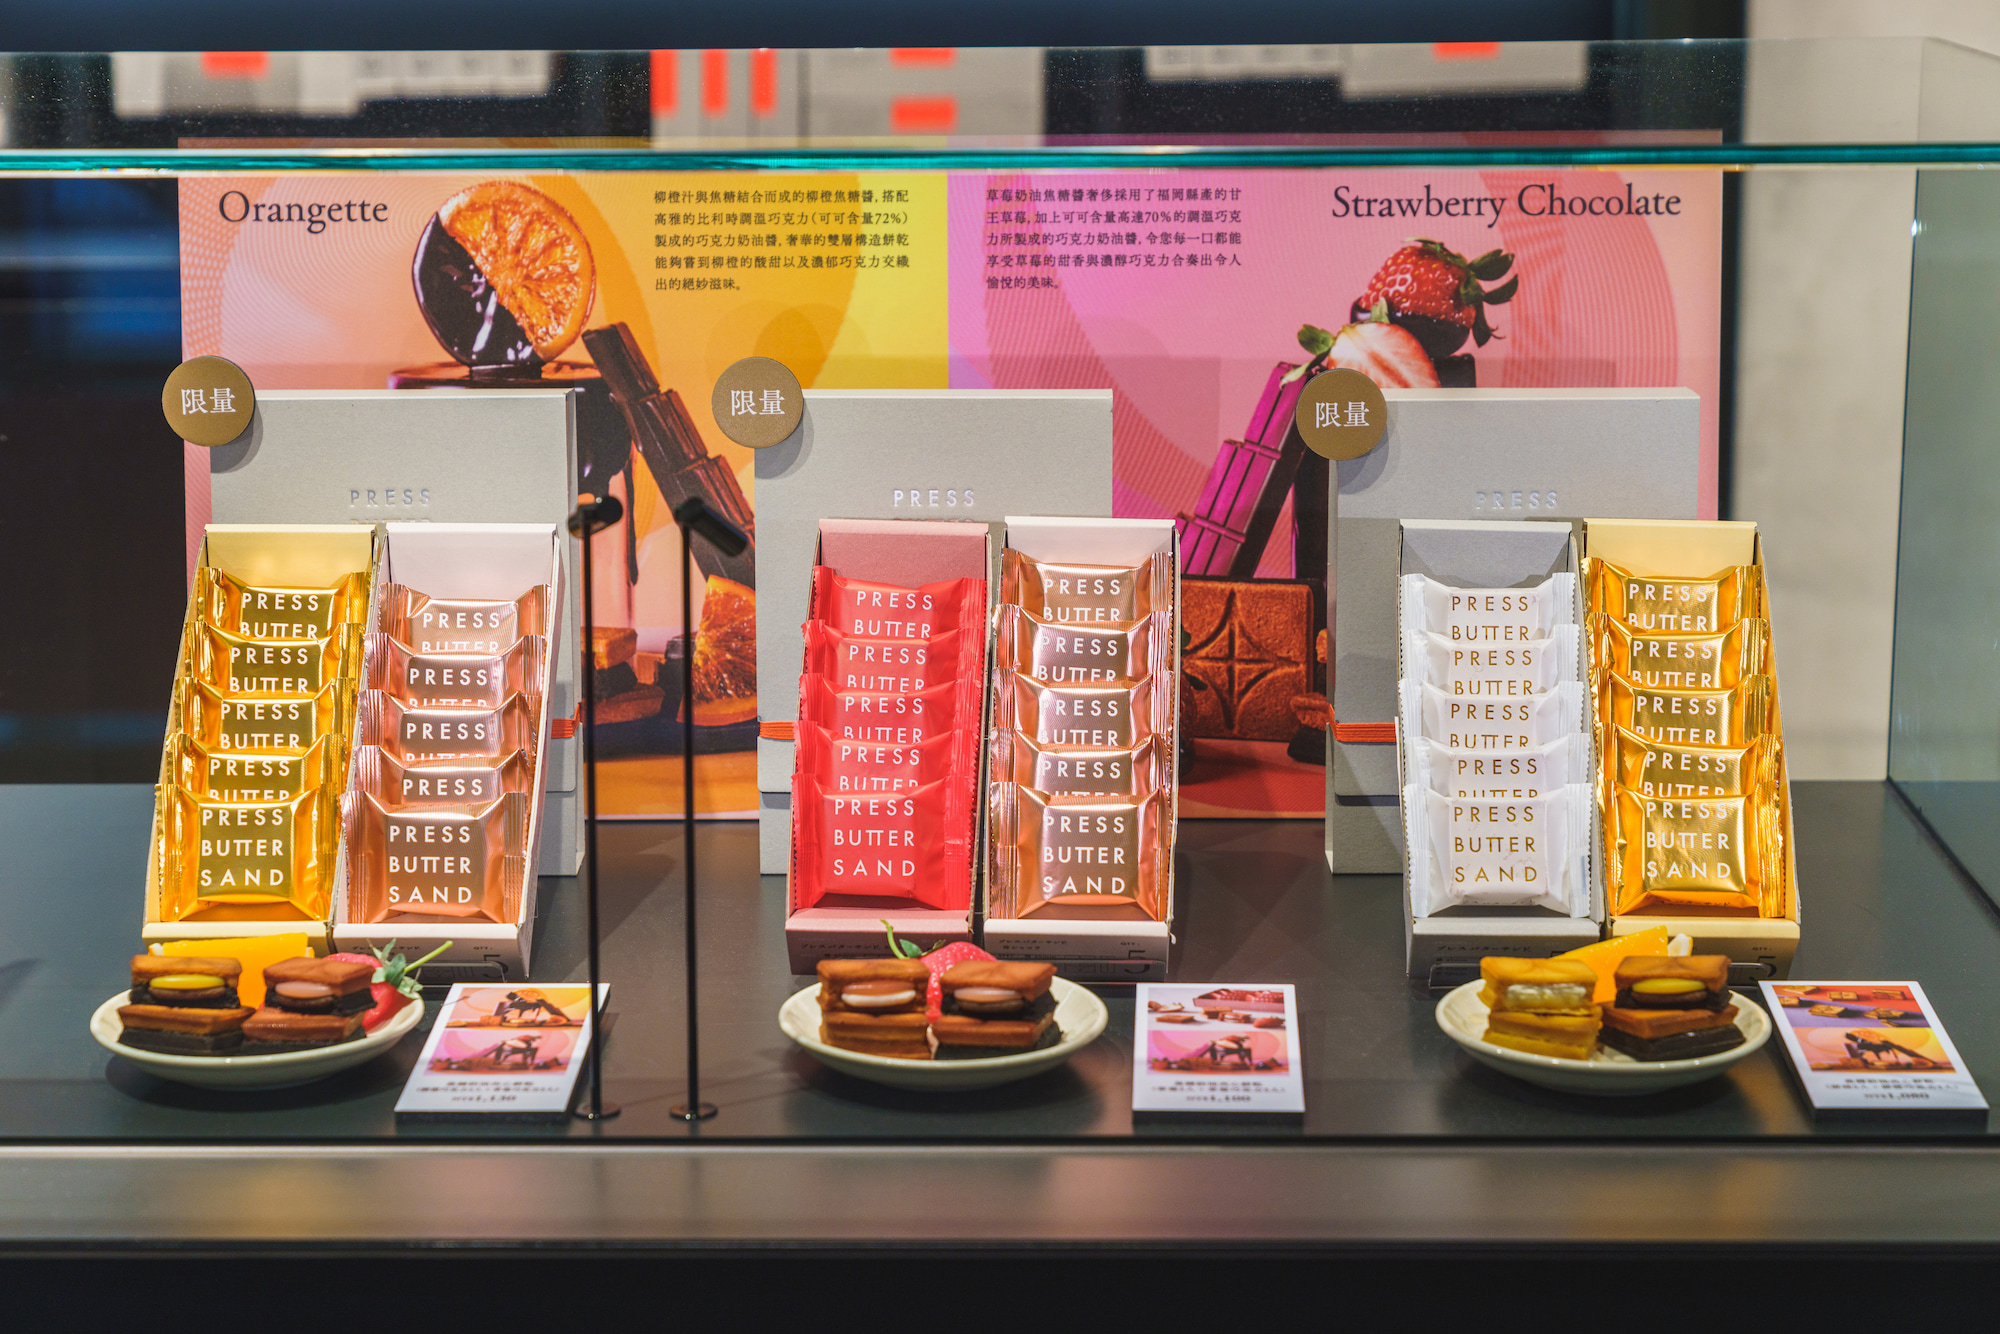 日本人氣伴手禮「PRESS BUTTER SAND 旗艦店」柳橙巧克力焦糖奶油夾心餅乾、草莓巧克力焦糖奶油夾心餅乾／售價 1,130 元（共 10 入）